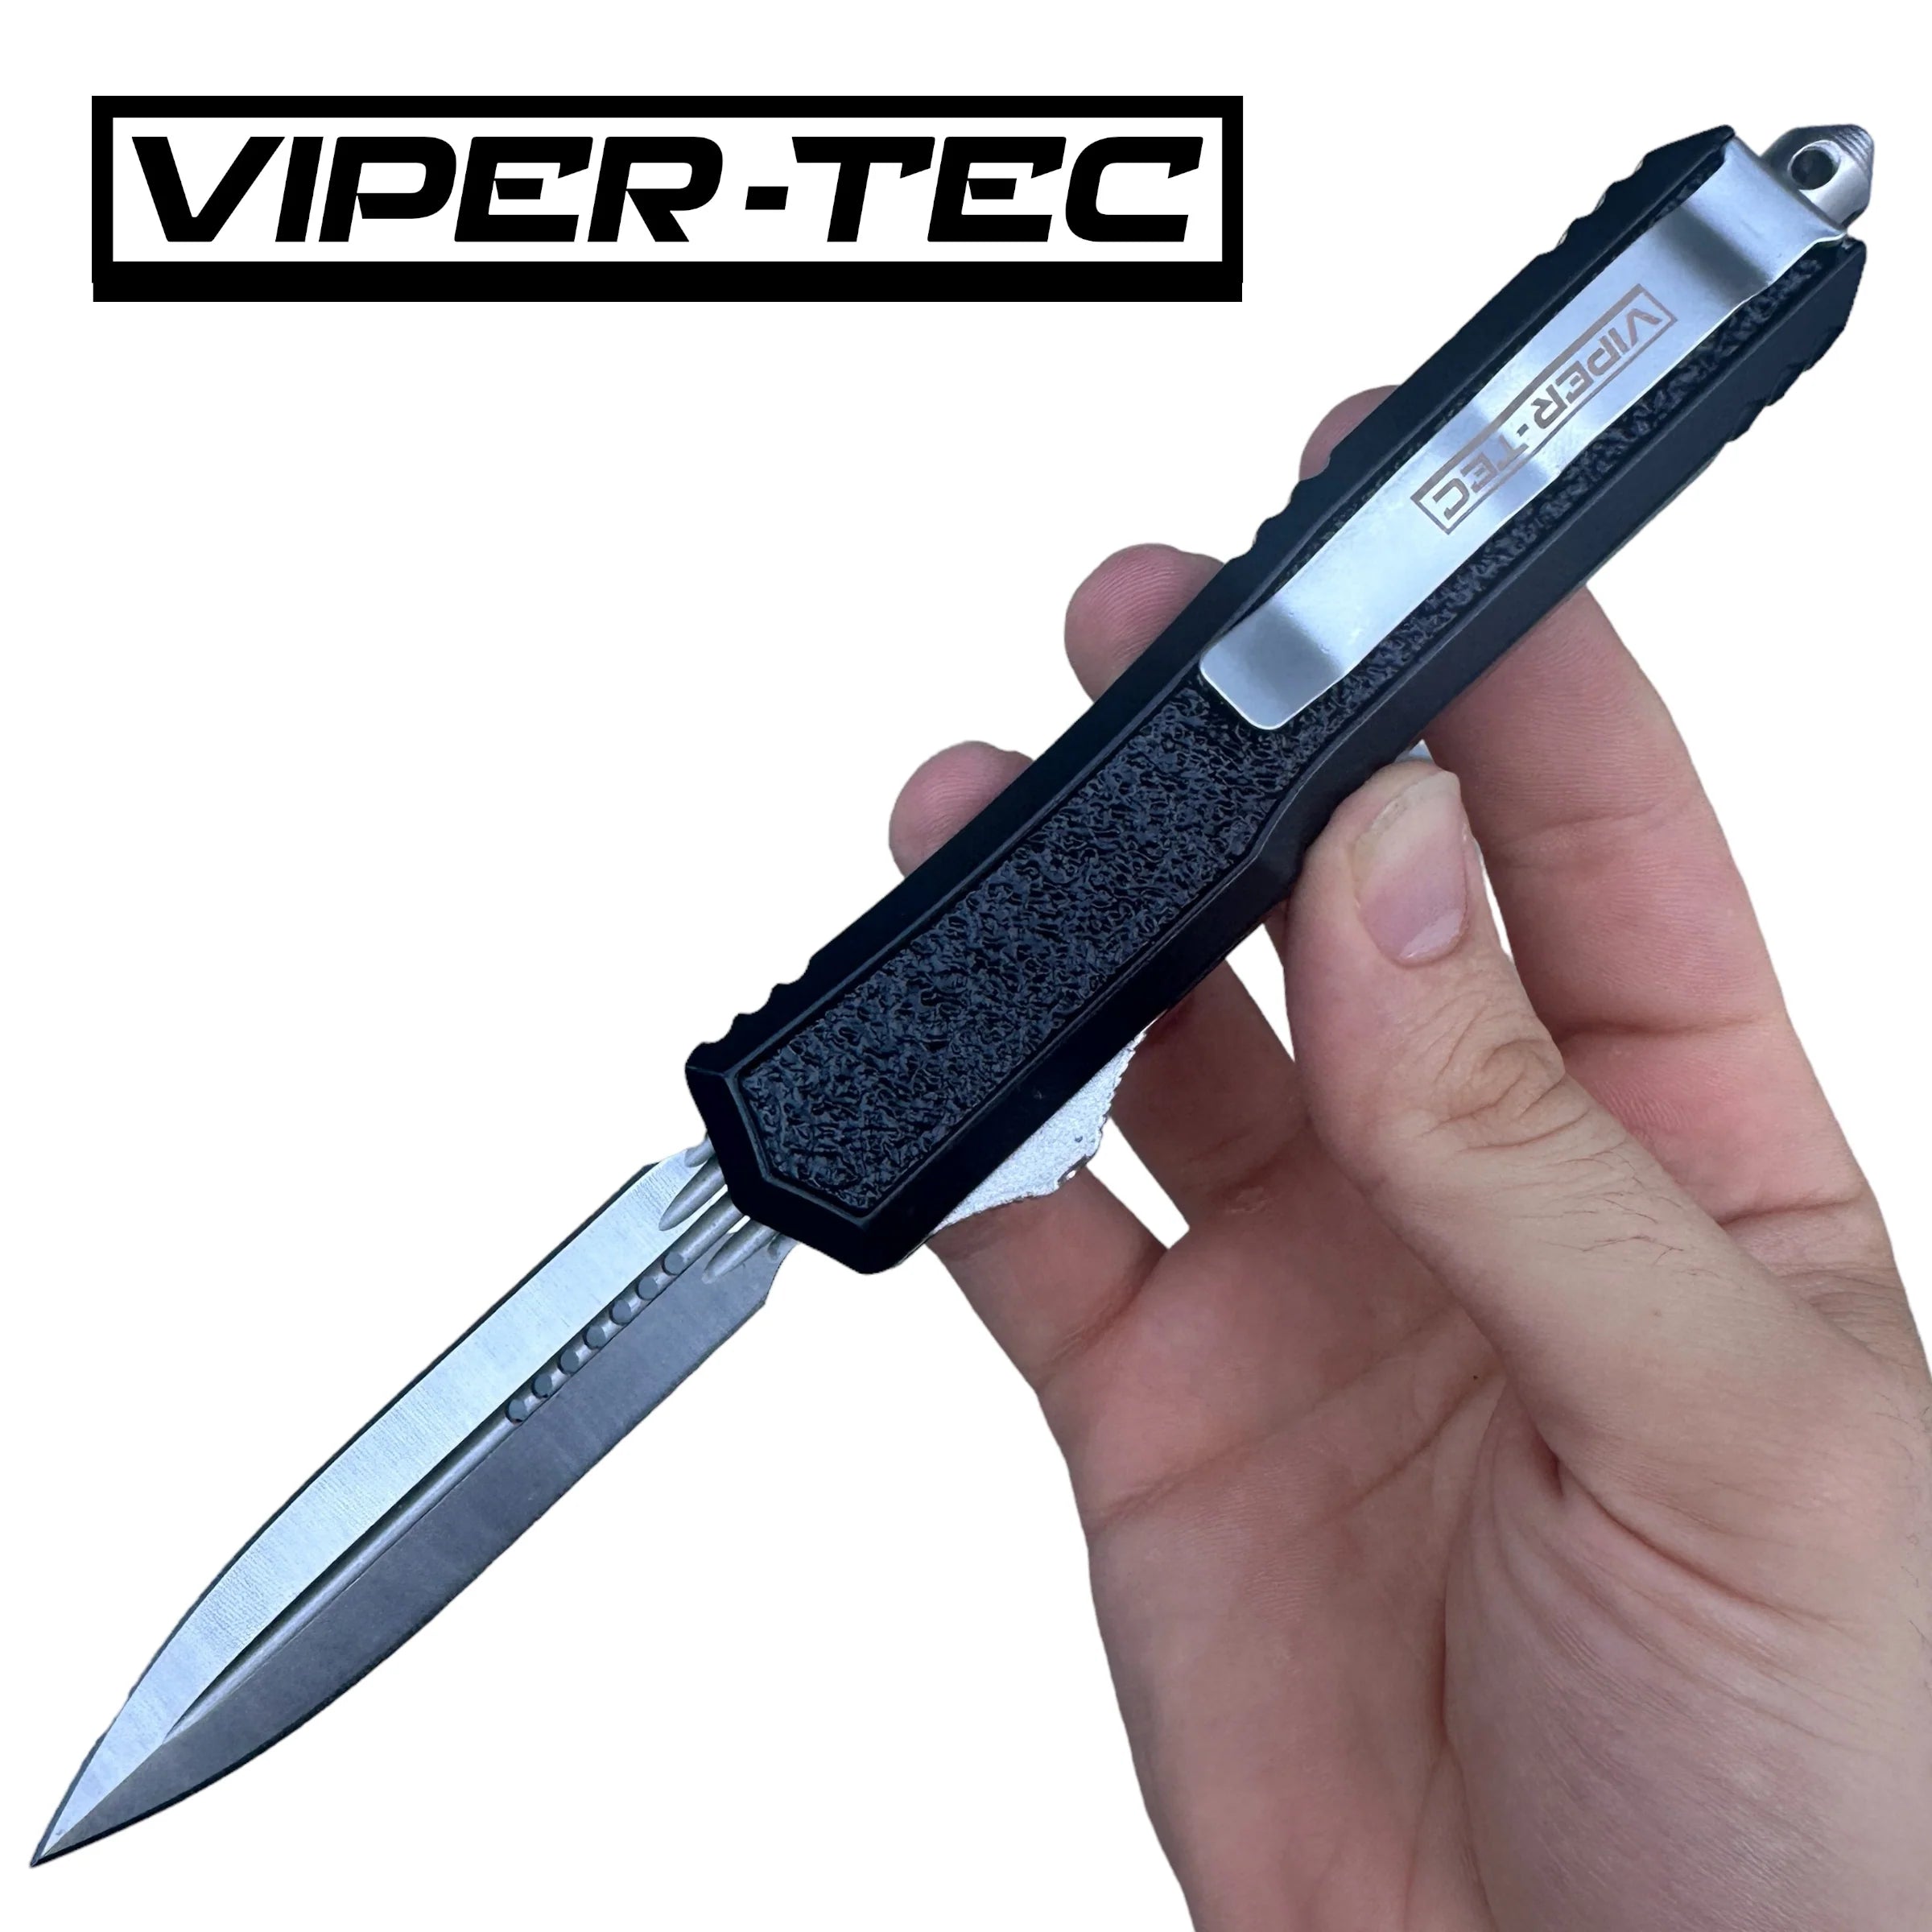 (c) Vipertecknives.com